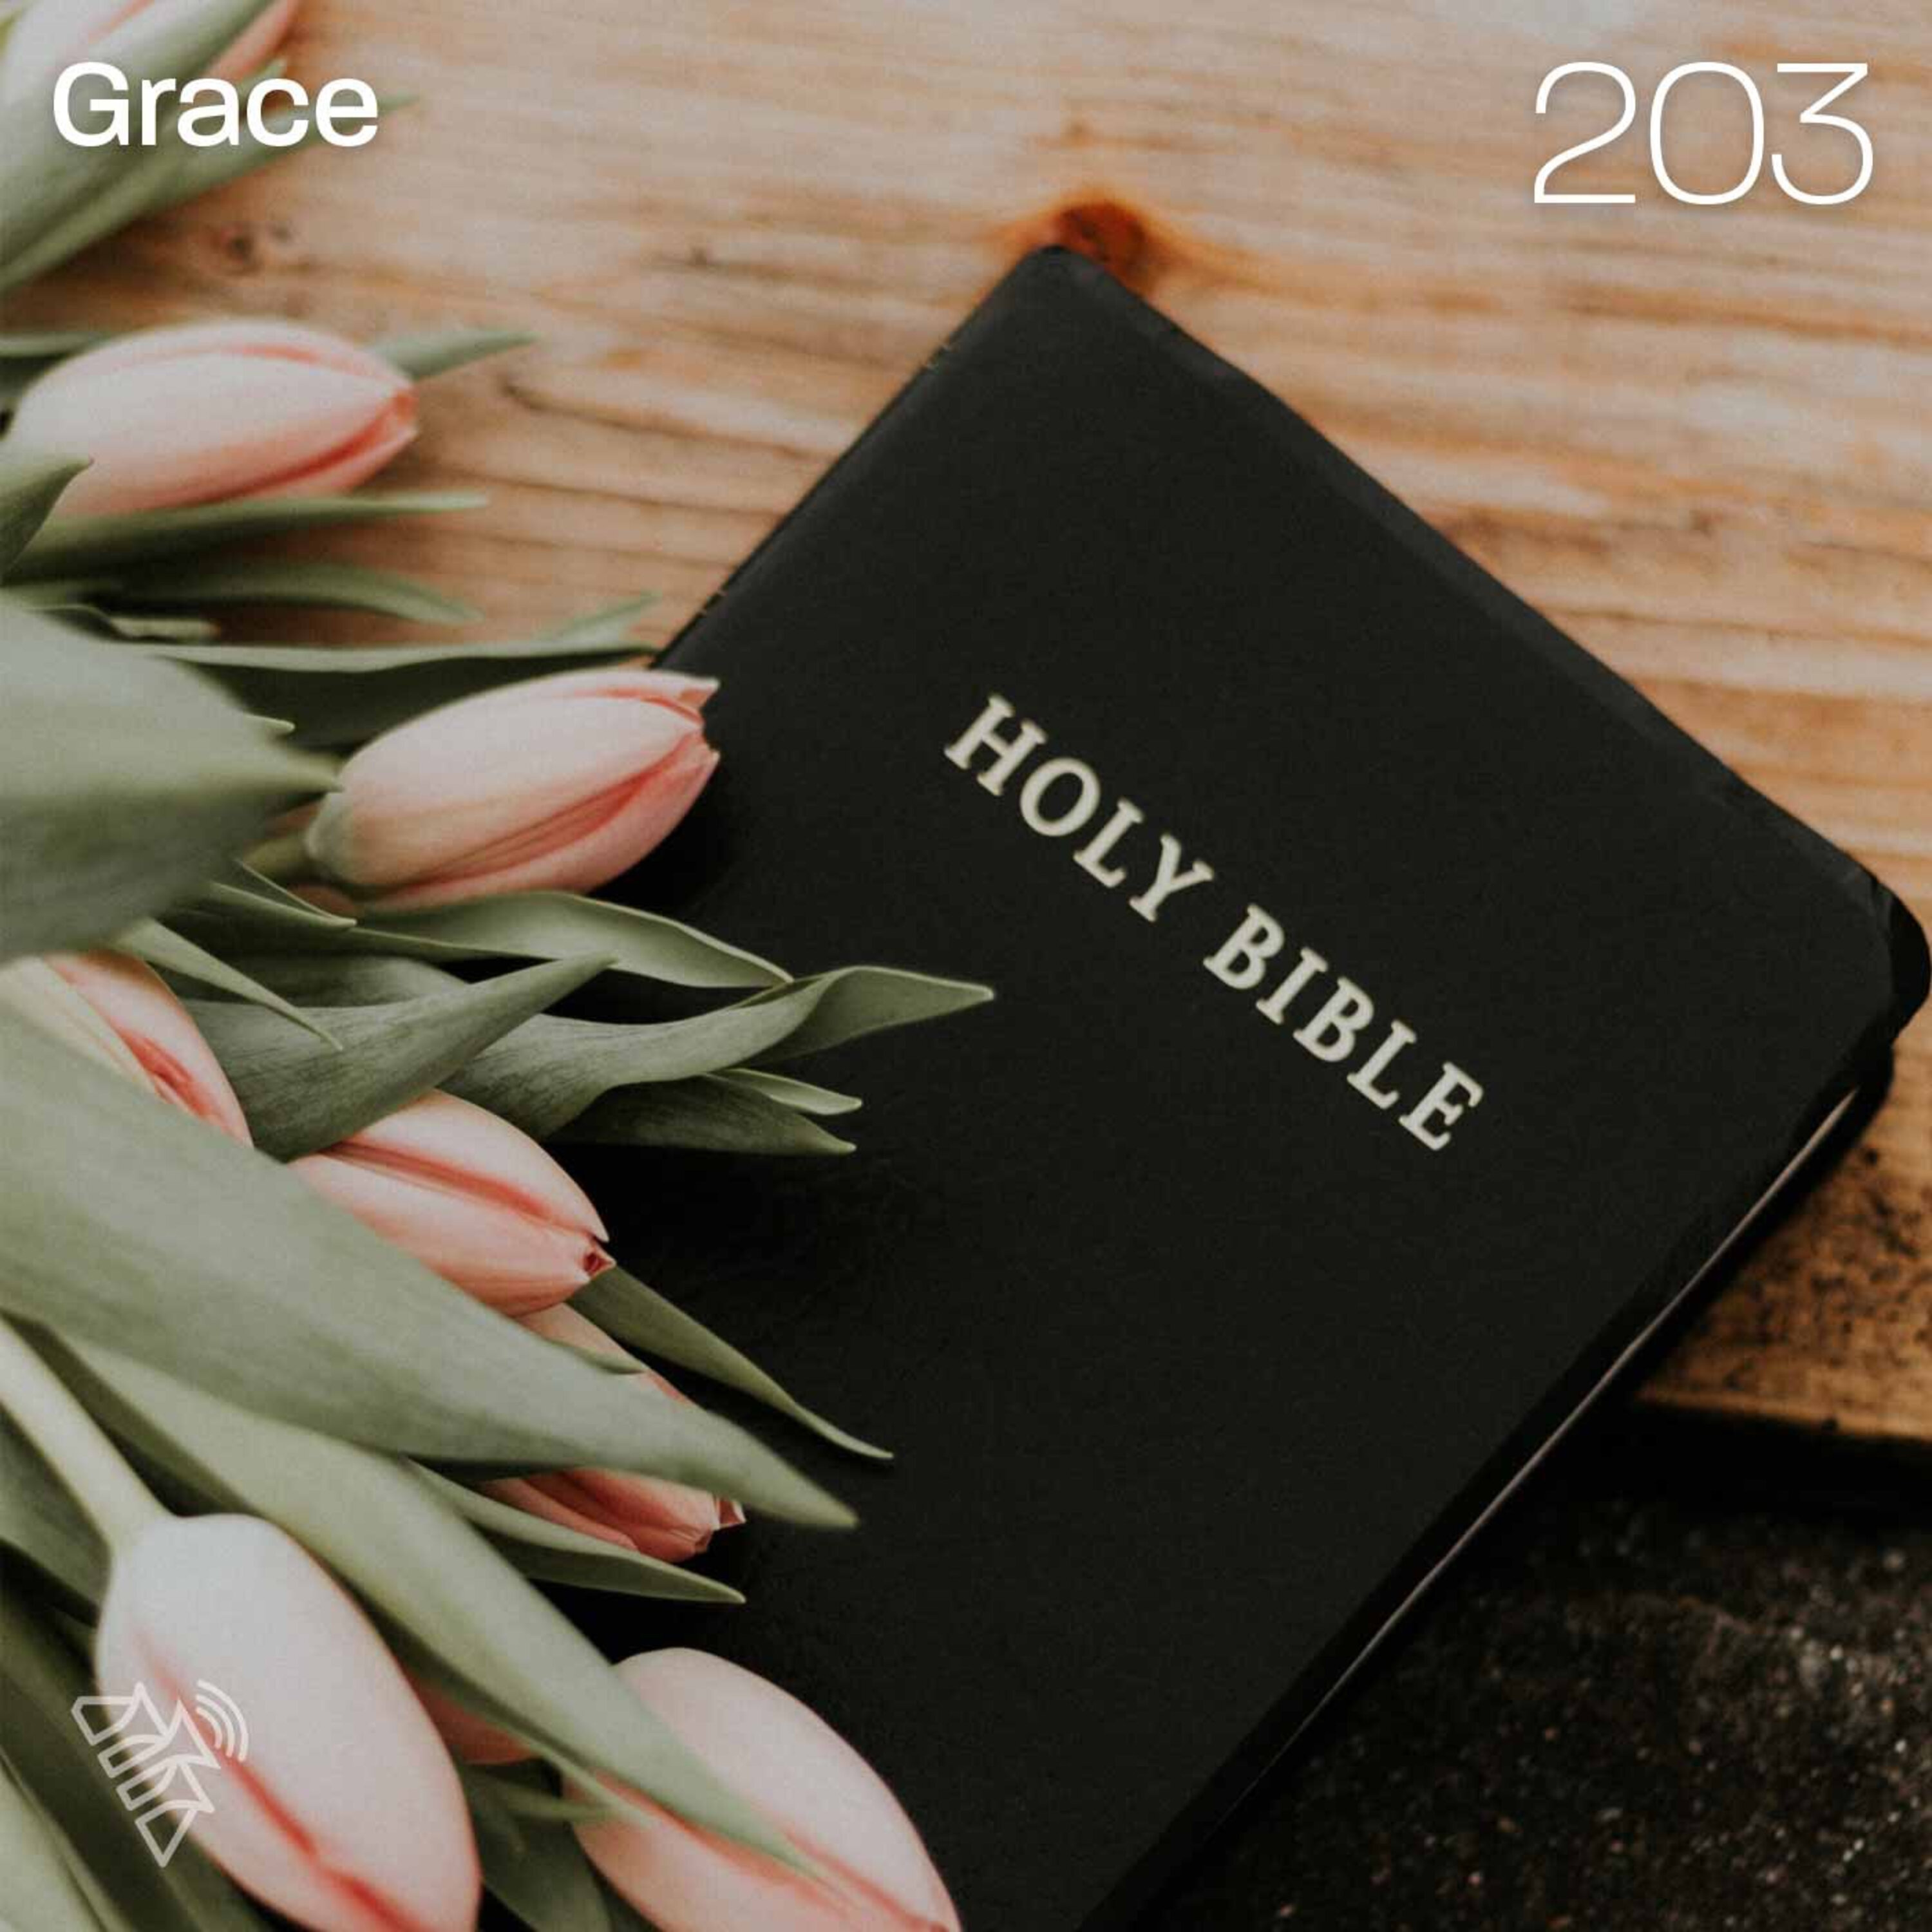 Grace - Pr Graeme Hazledine - 203